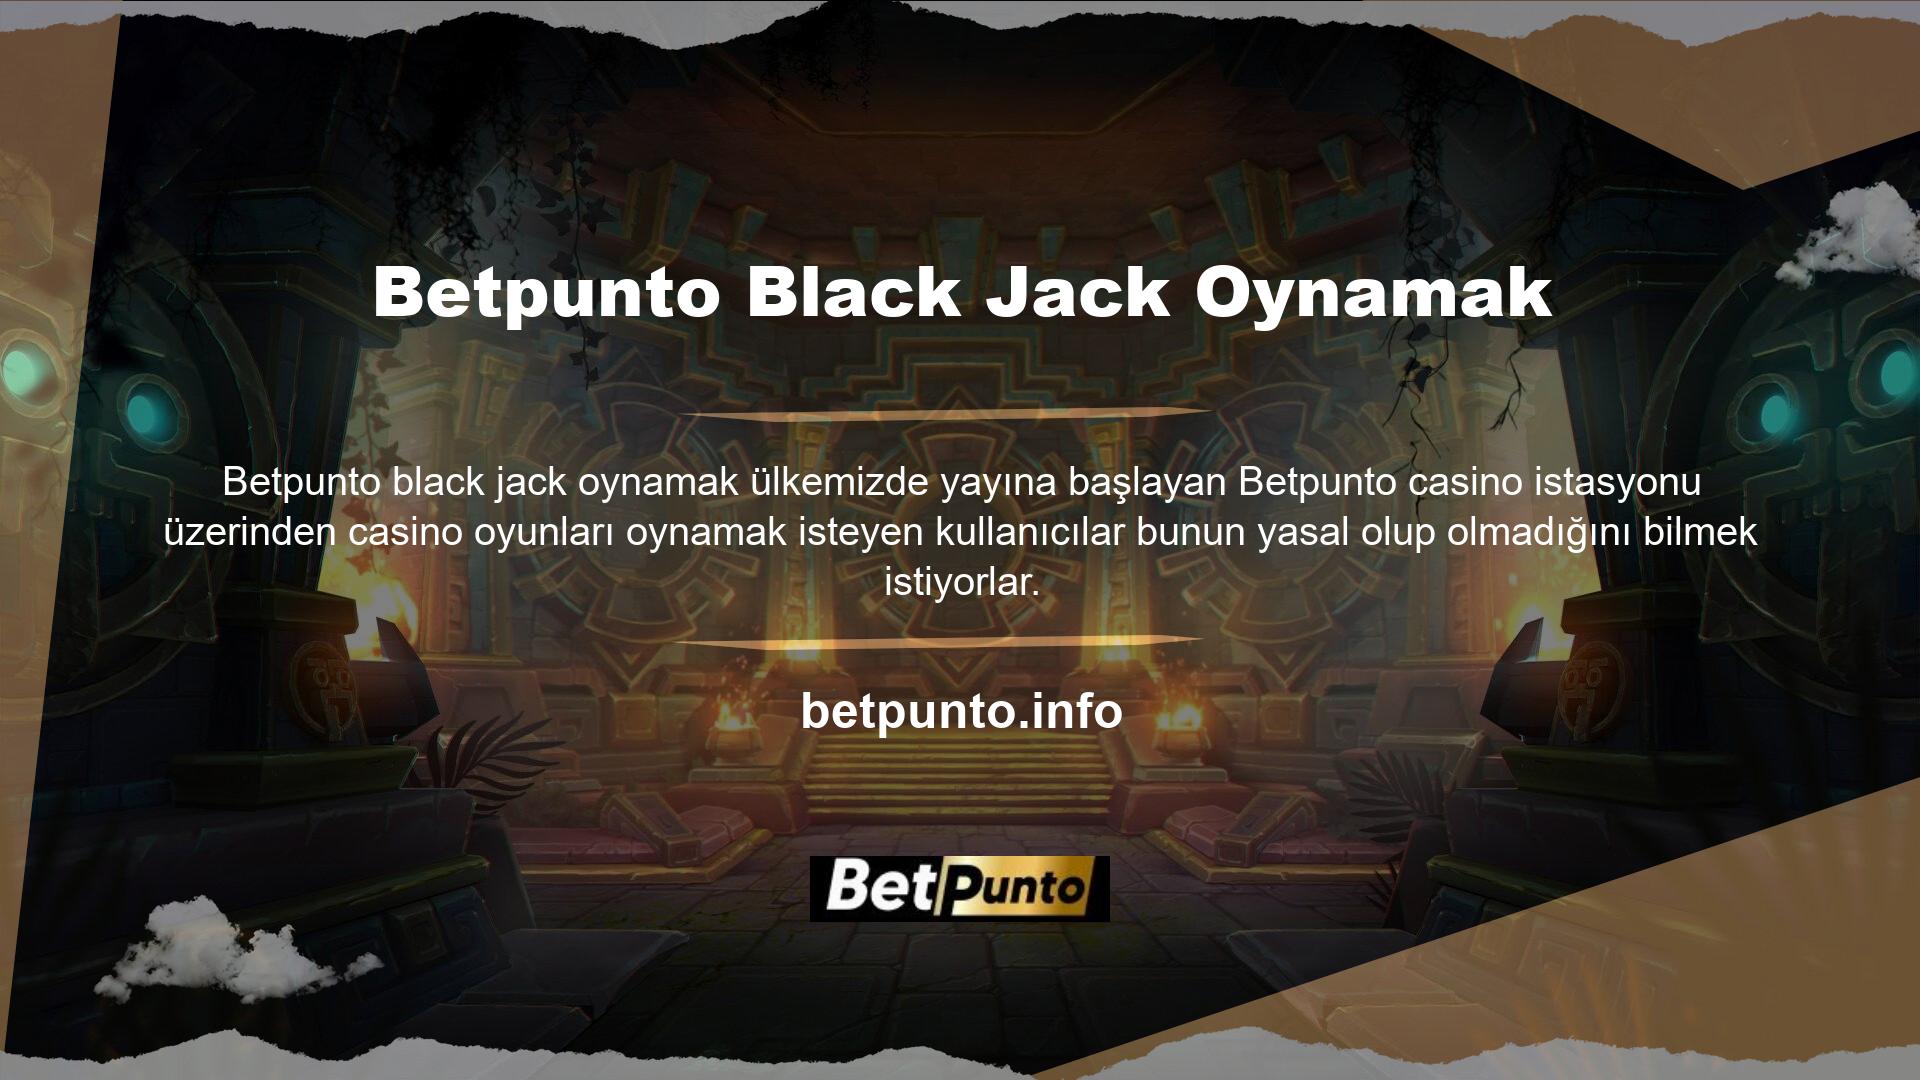 Özellikle Betpunto Black Jack oynamayı öğrenen kullanıcılar, bu sitenin oyun oynarken kendilerine güvenilir bir platform sağlamasını beklemektedir